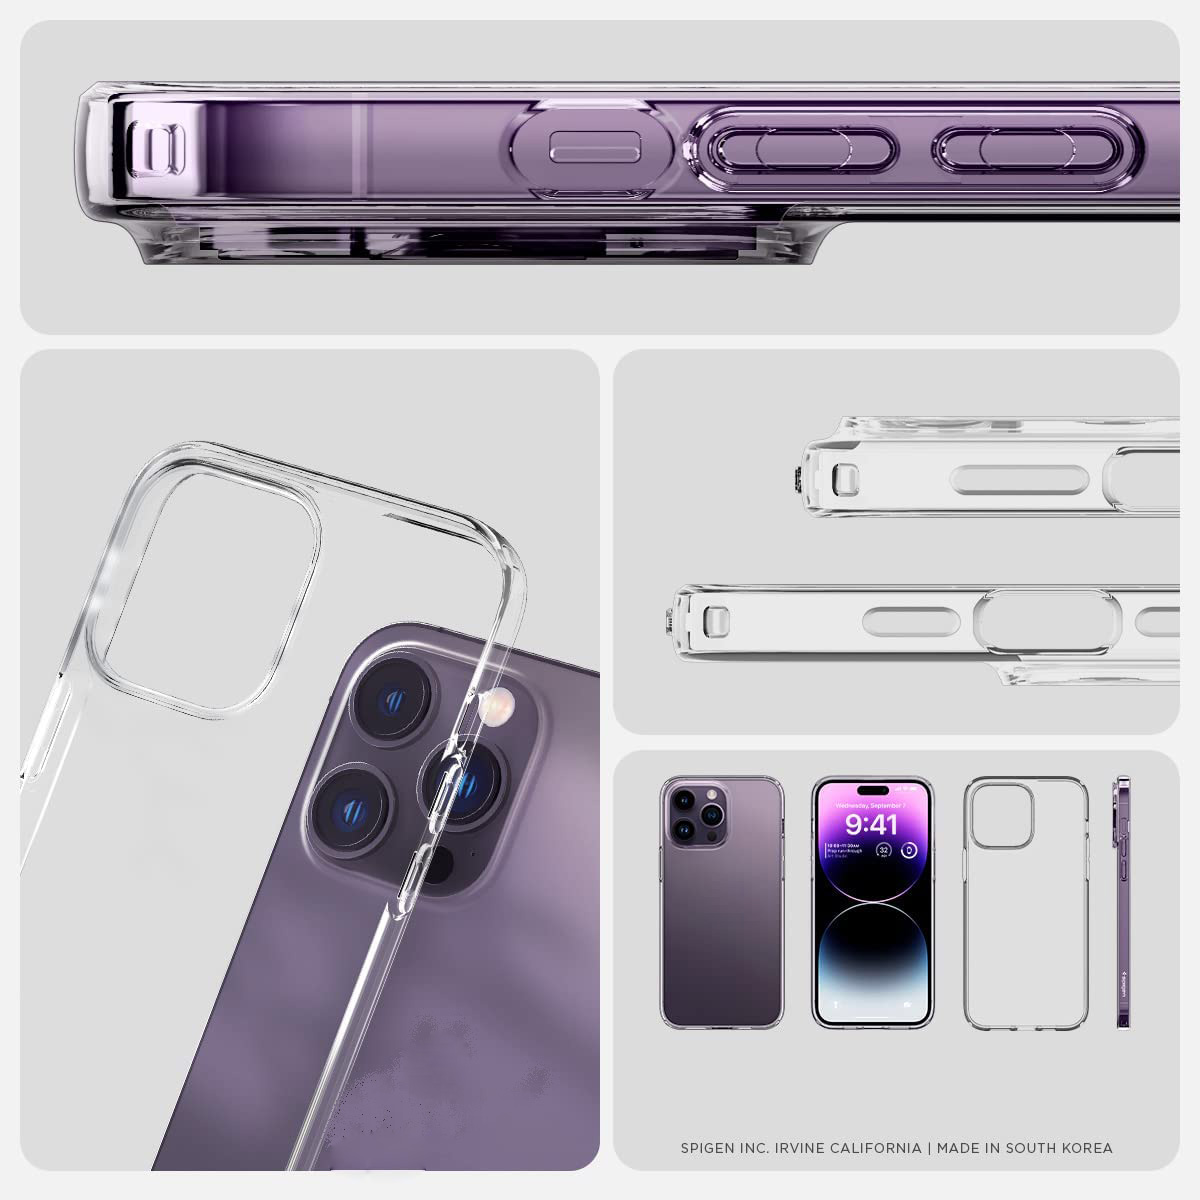 Ốp lưng chống sốc trong suốt cho iPhone 14 Pro Max (6.7 inch) hiệu Memumi Crystal Clear Case siêu mỏng 1.5mm độ trong tuyệt đối, chống trầy xước, chống ố vàng, tản nhiệt tốt - hàng nhập khẩu